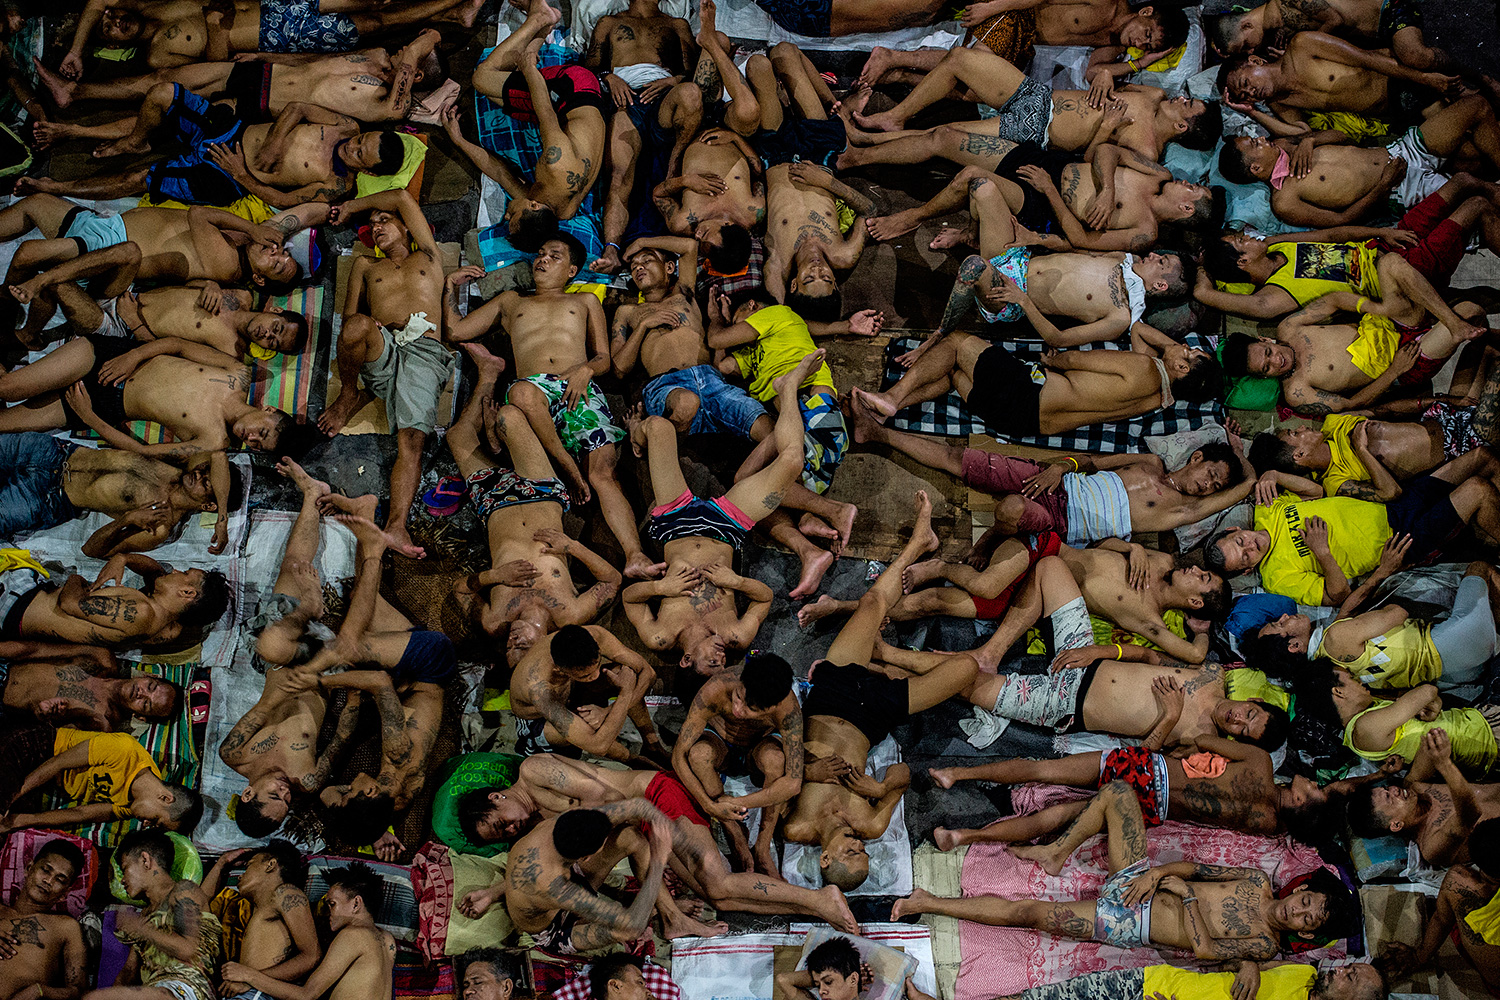 La cruda realidad de una cárcel filipina: más de 3.800 presos en un espacio para 800